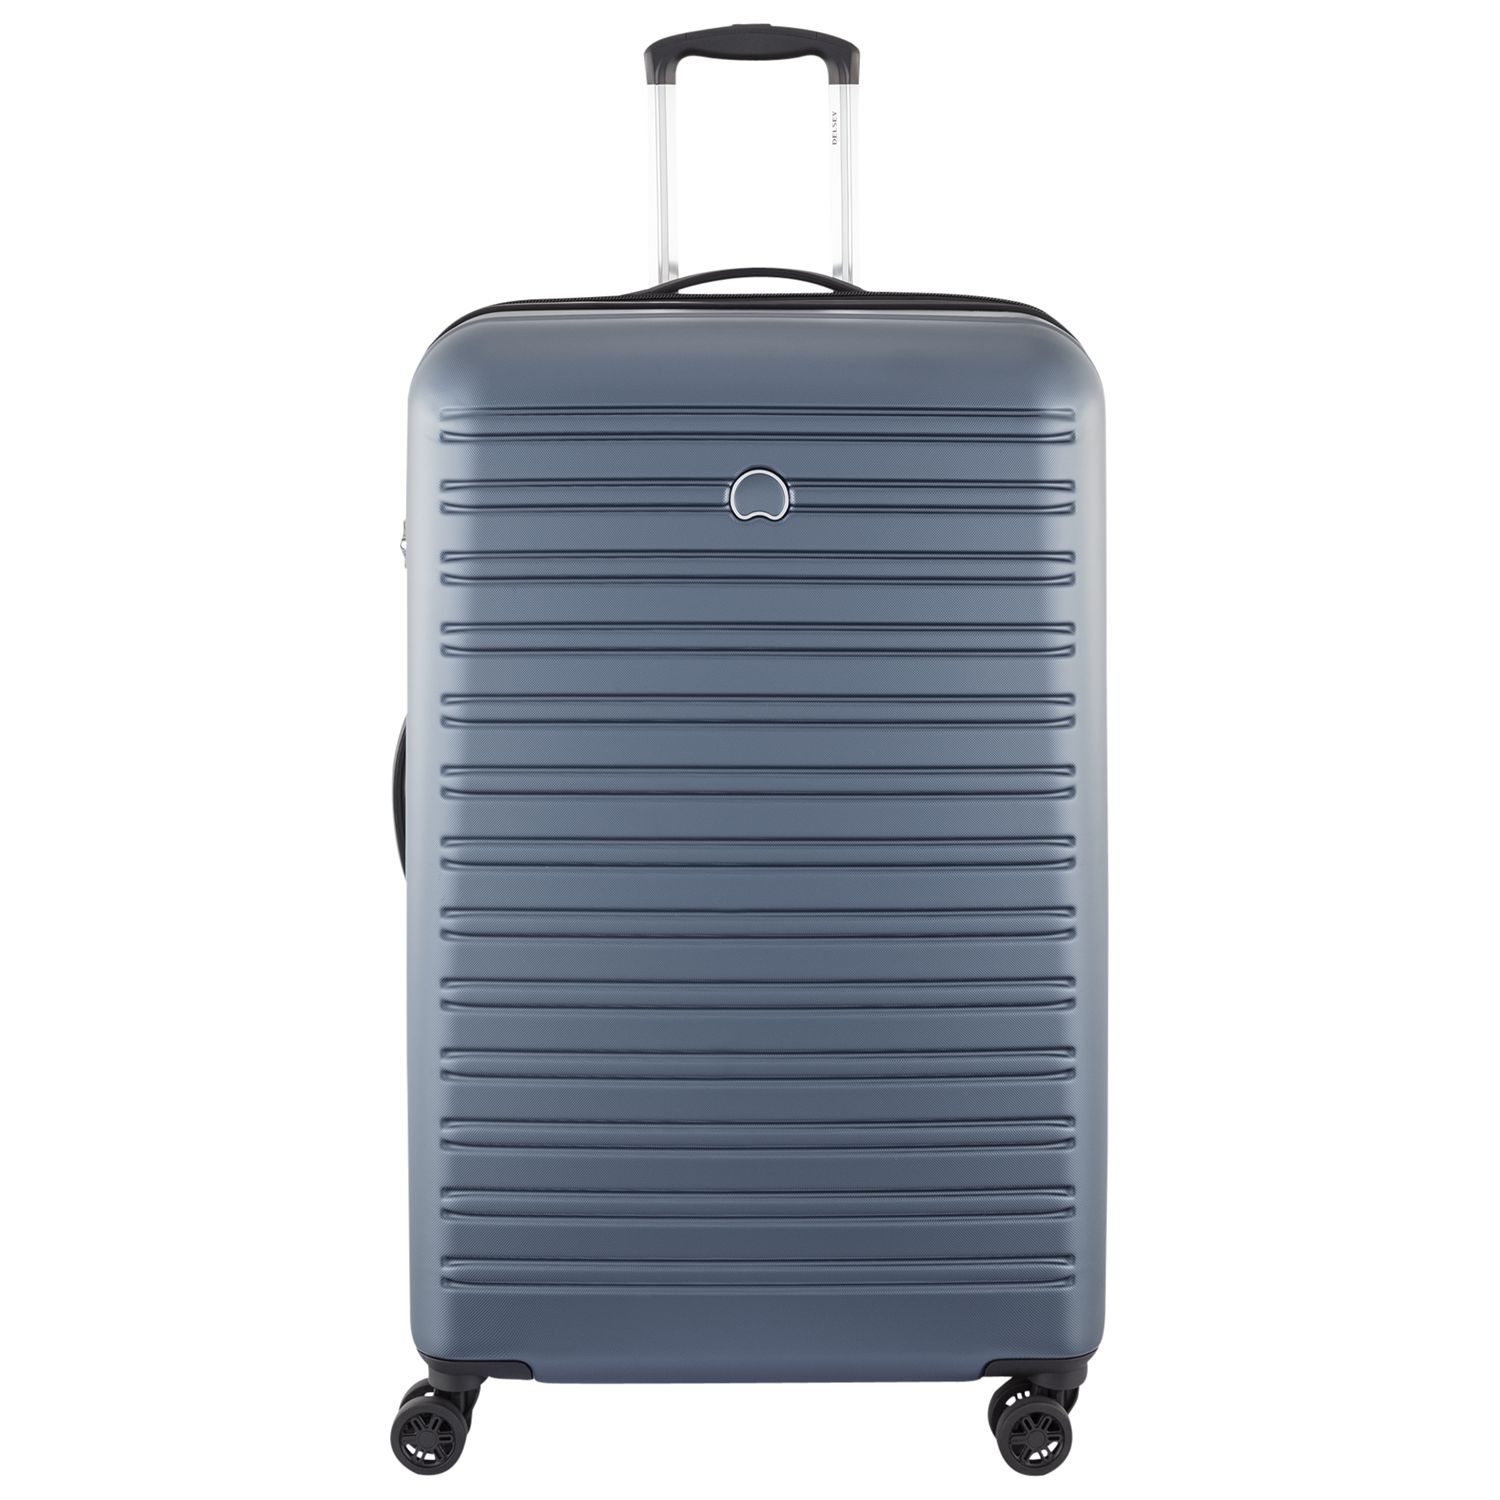 Delsey Segur 4 Wheel 78cm Large Suitcase